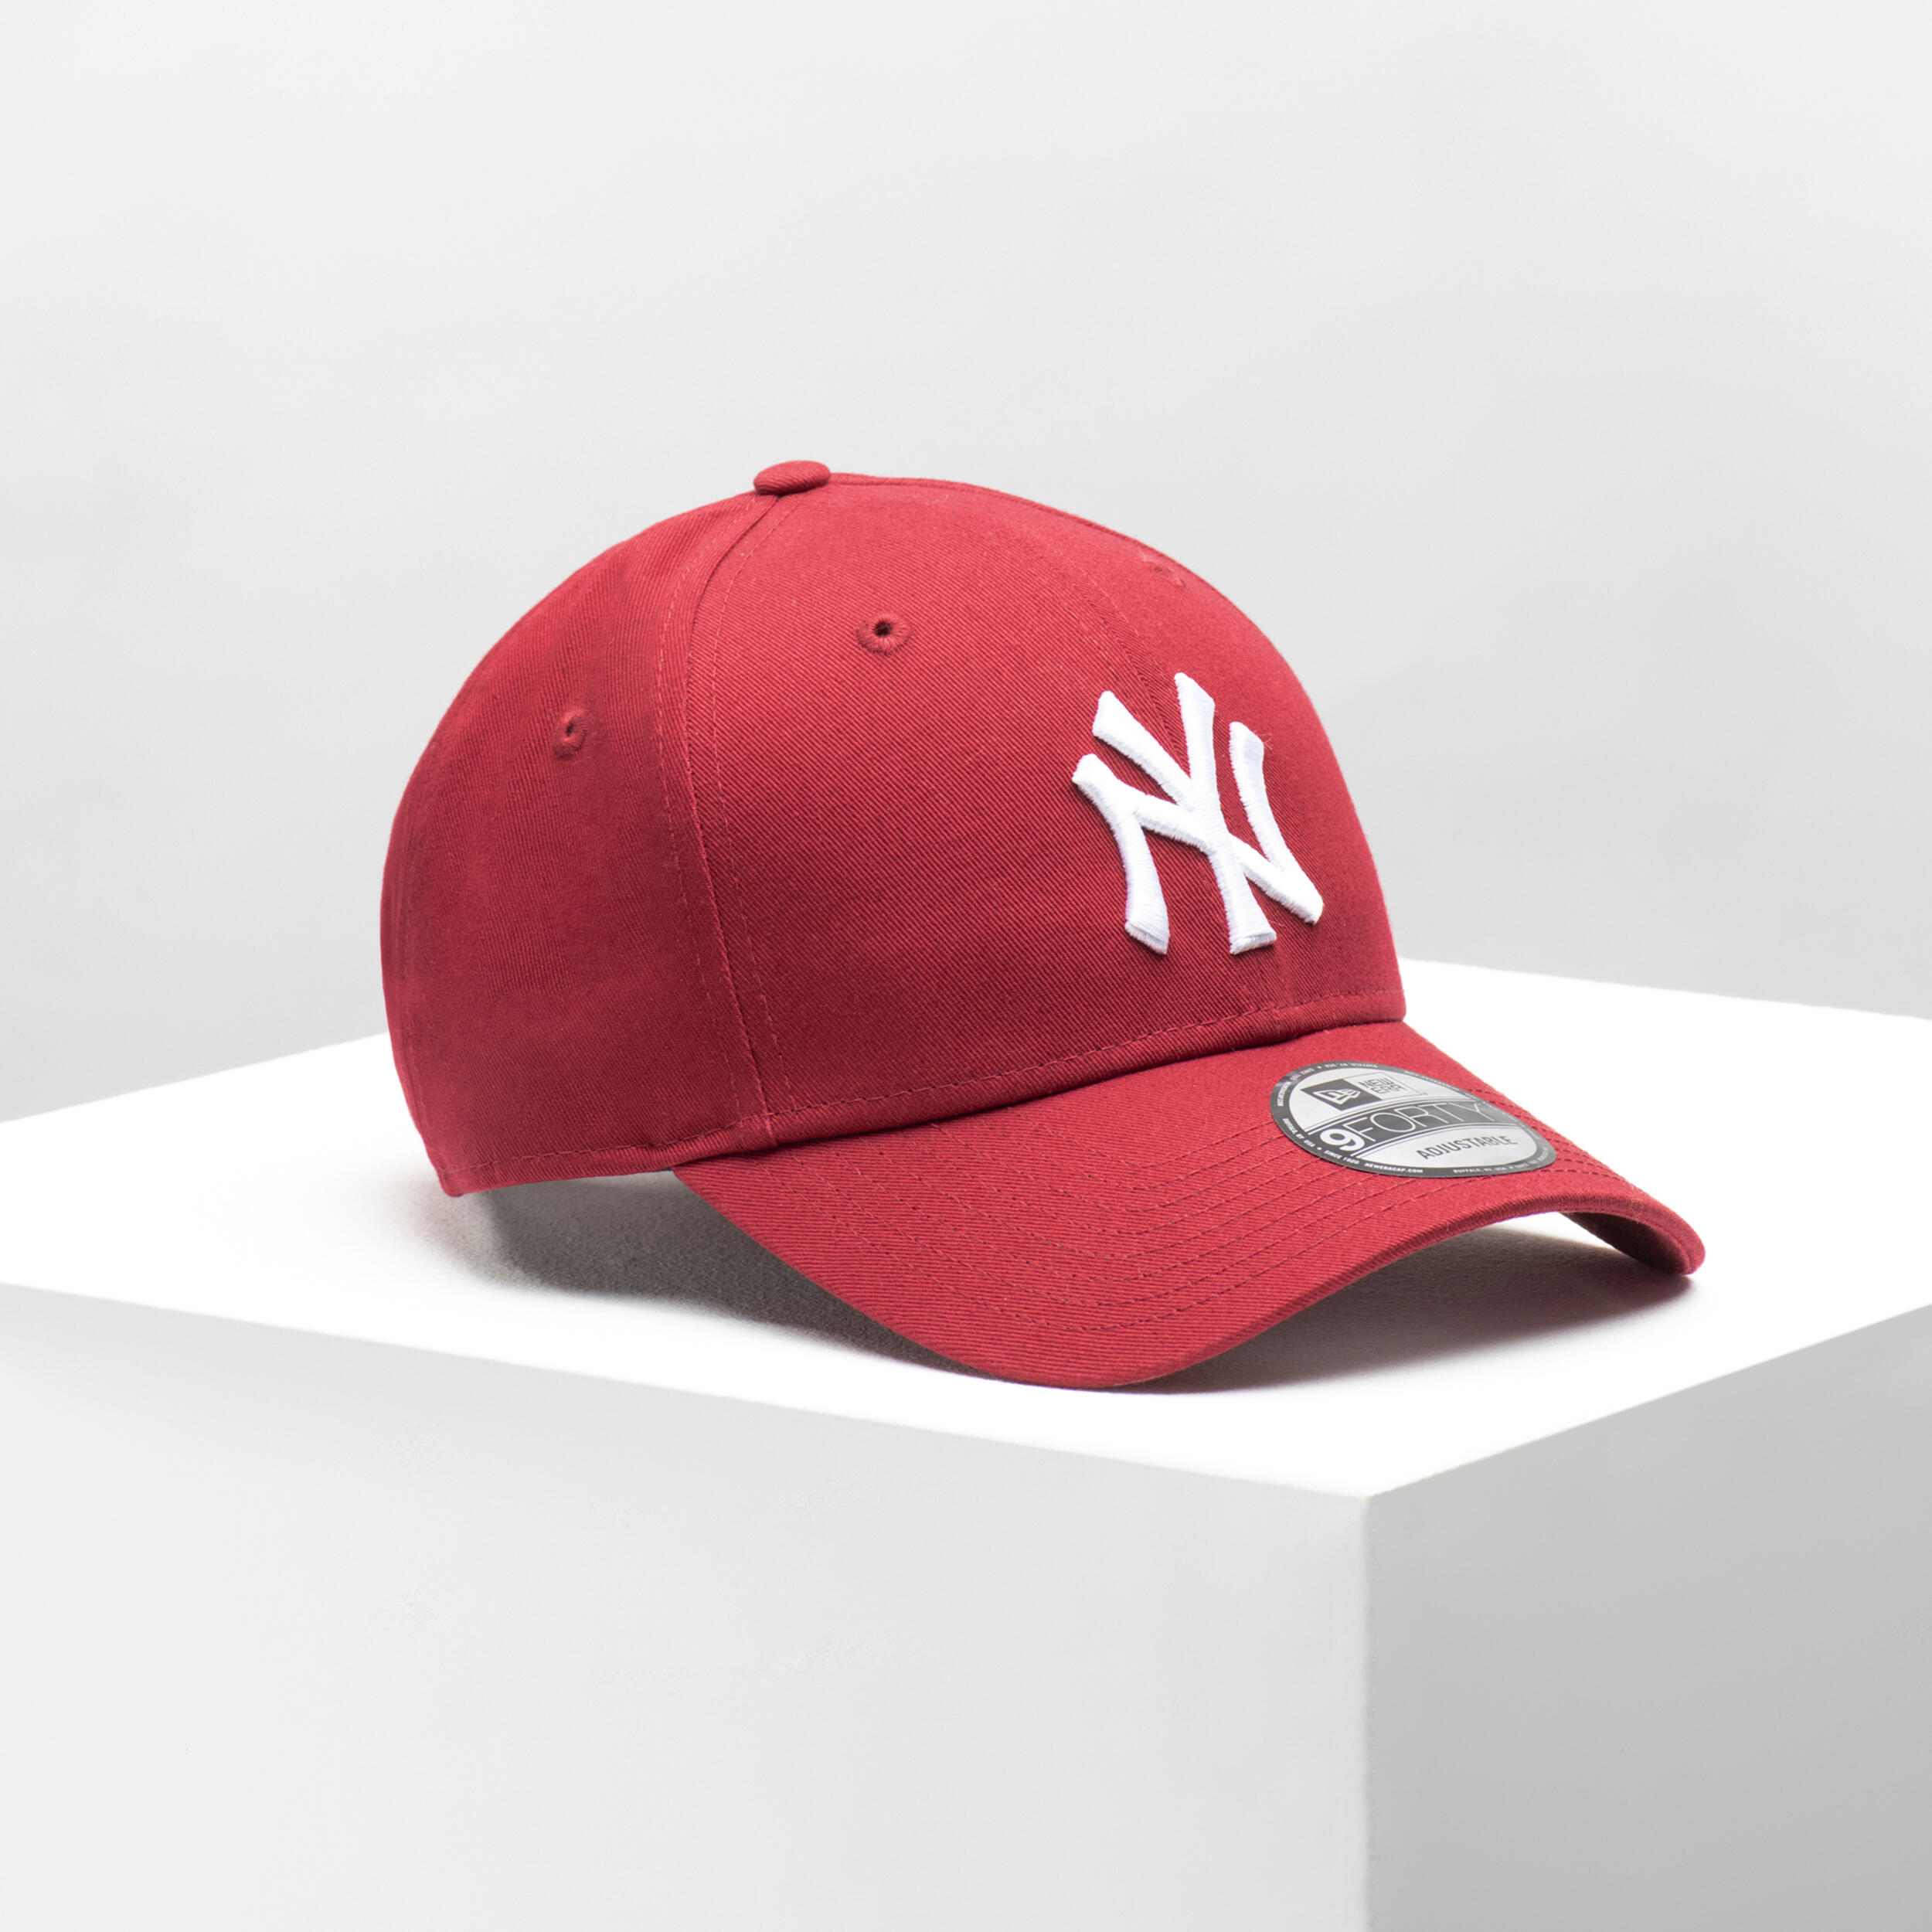 Men's / Women's MLB Baseball Cap New York Yankees - Red 2/6